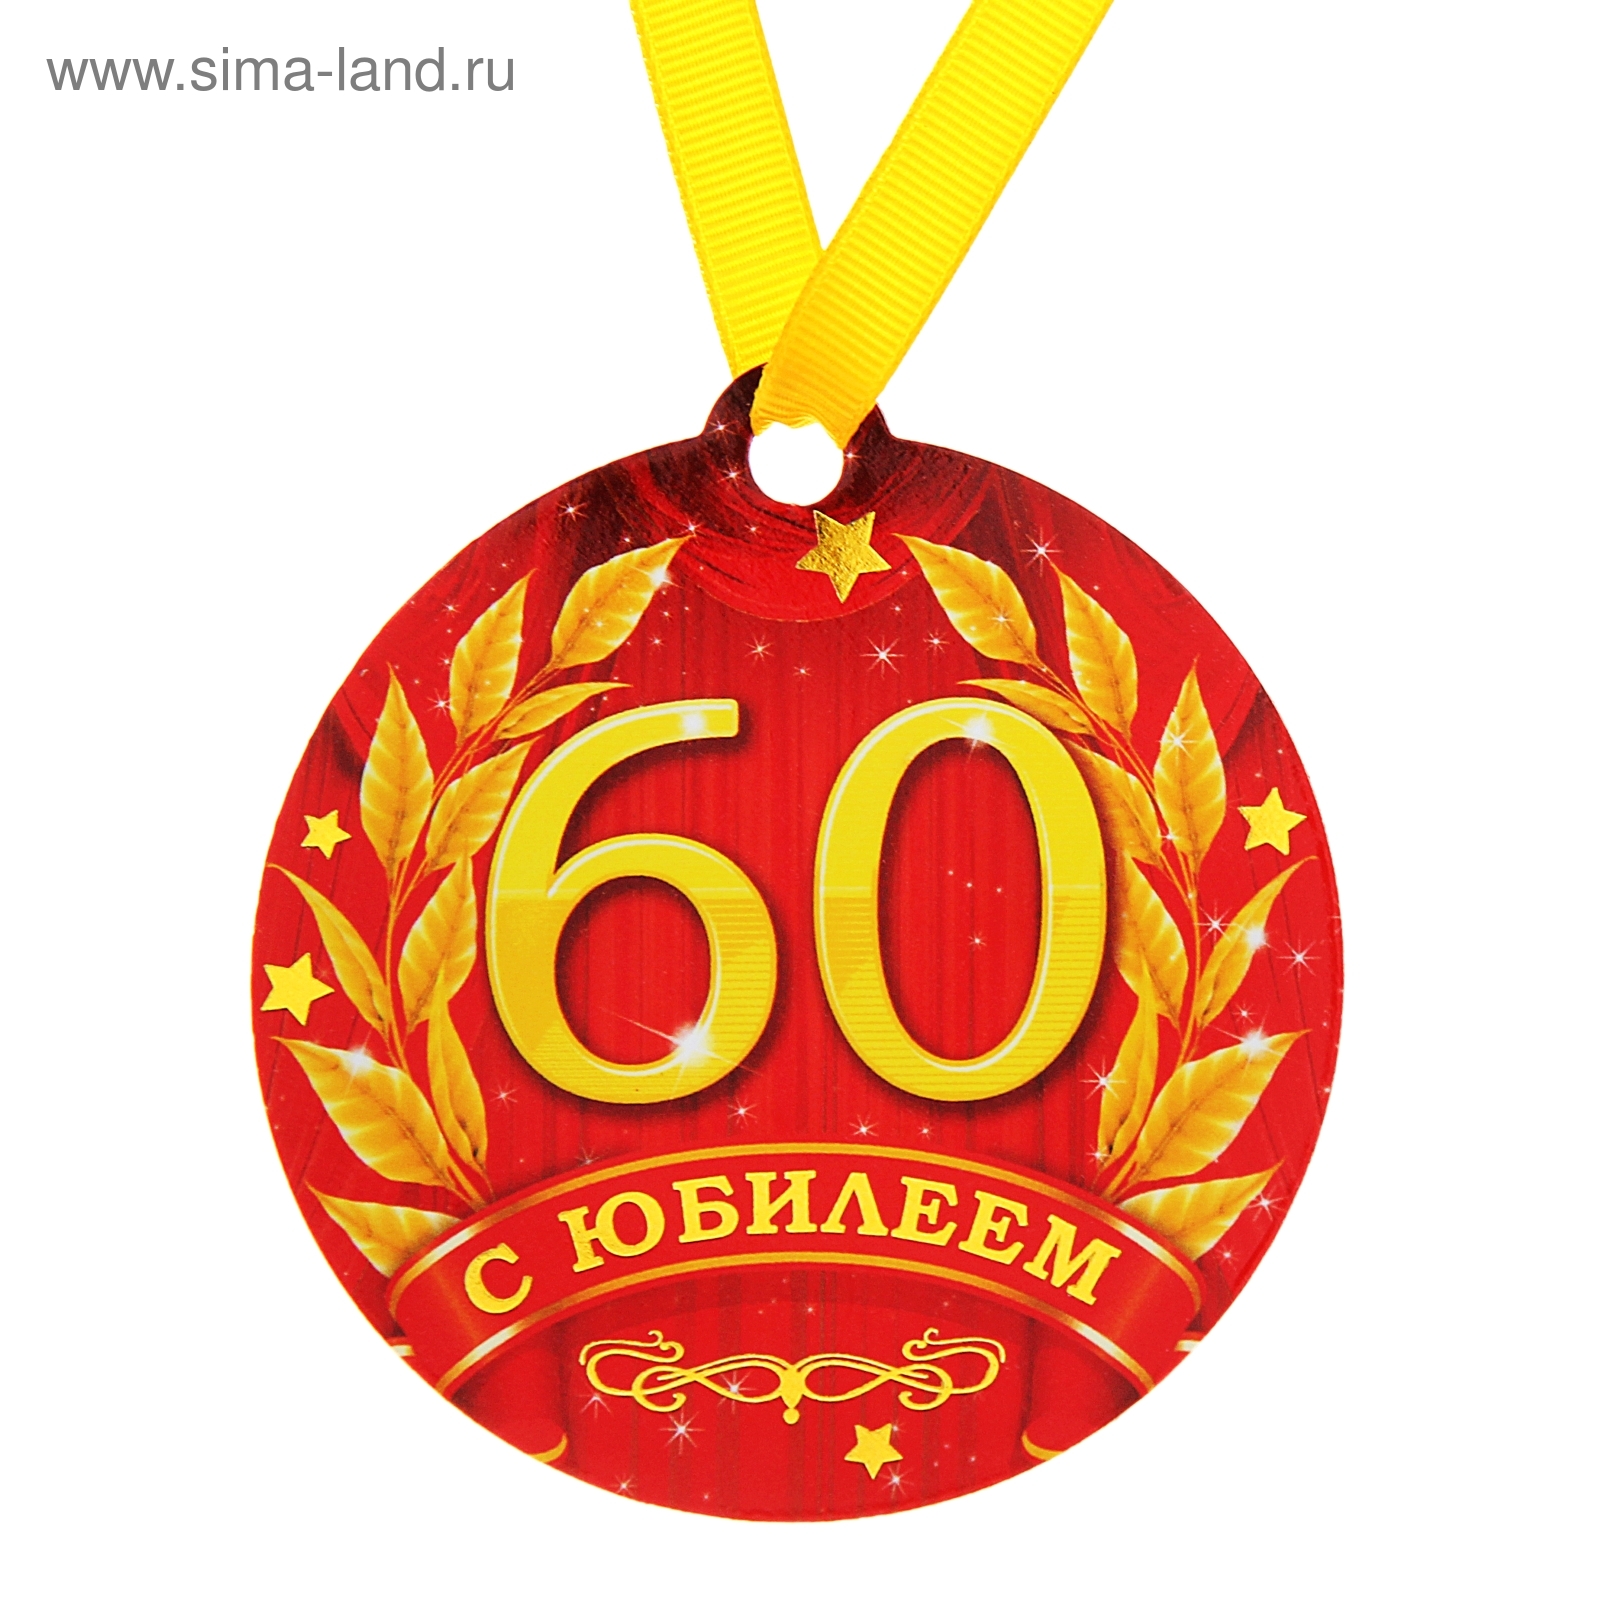 Медаль 60 лет юбилей. Медаль "60 лет". Медаль "с юбилеем 60 лет". Медаль 60 лет юбилей женщине. Медаль 60 лет юбилей мужчине.